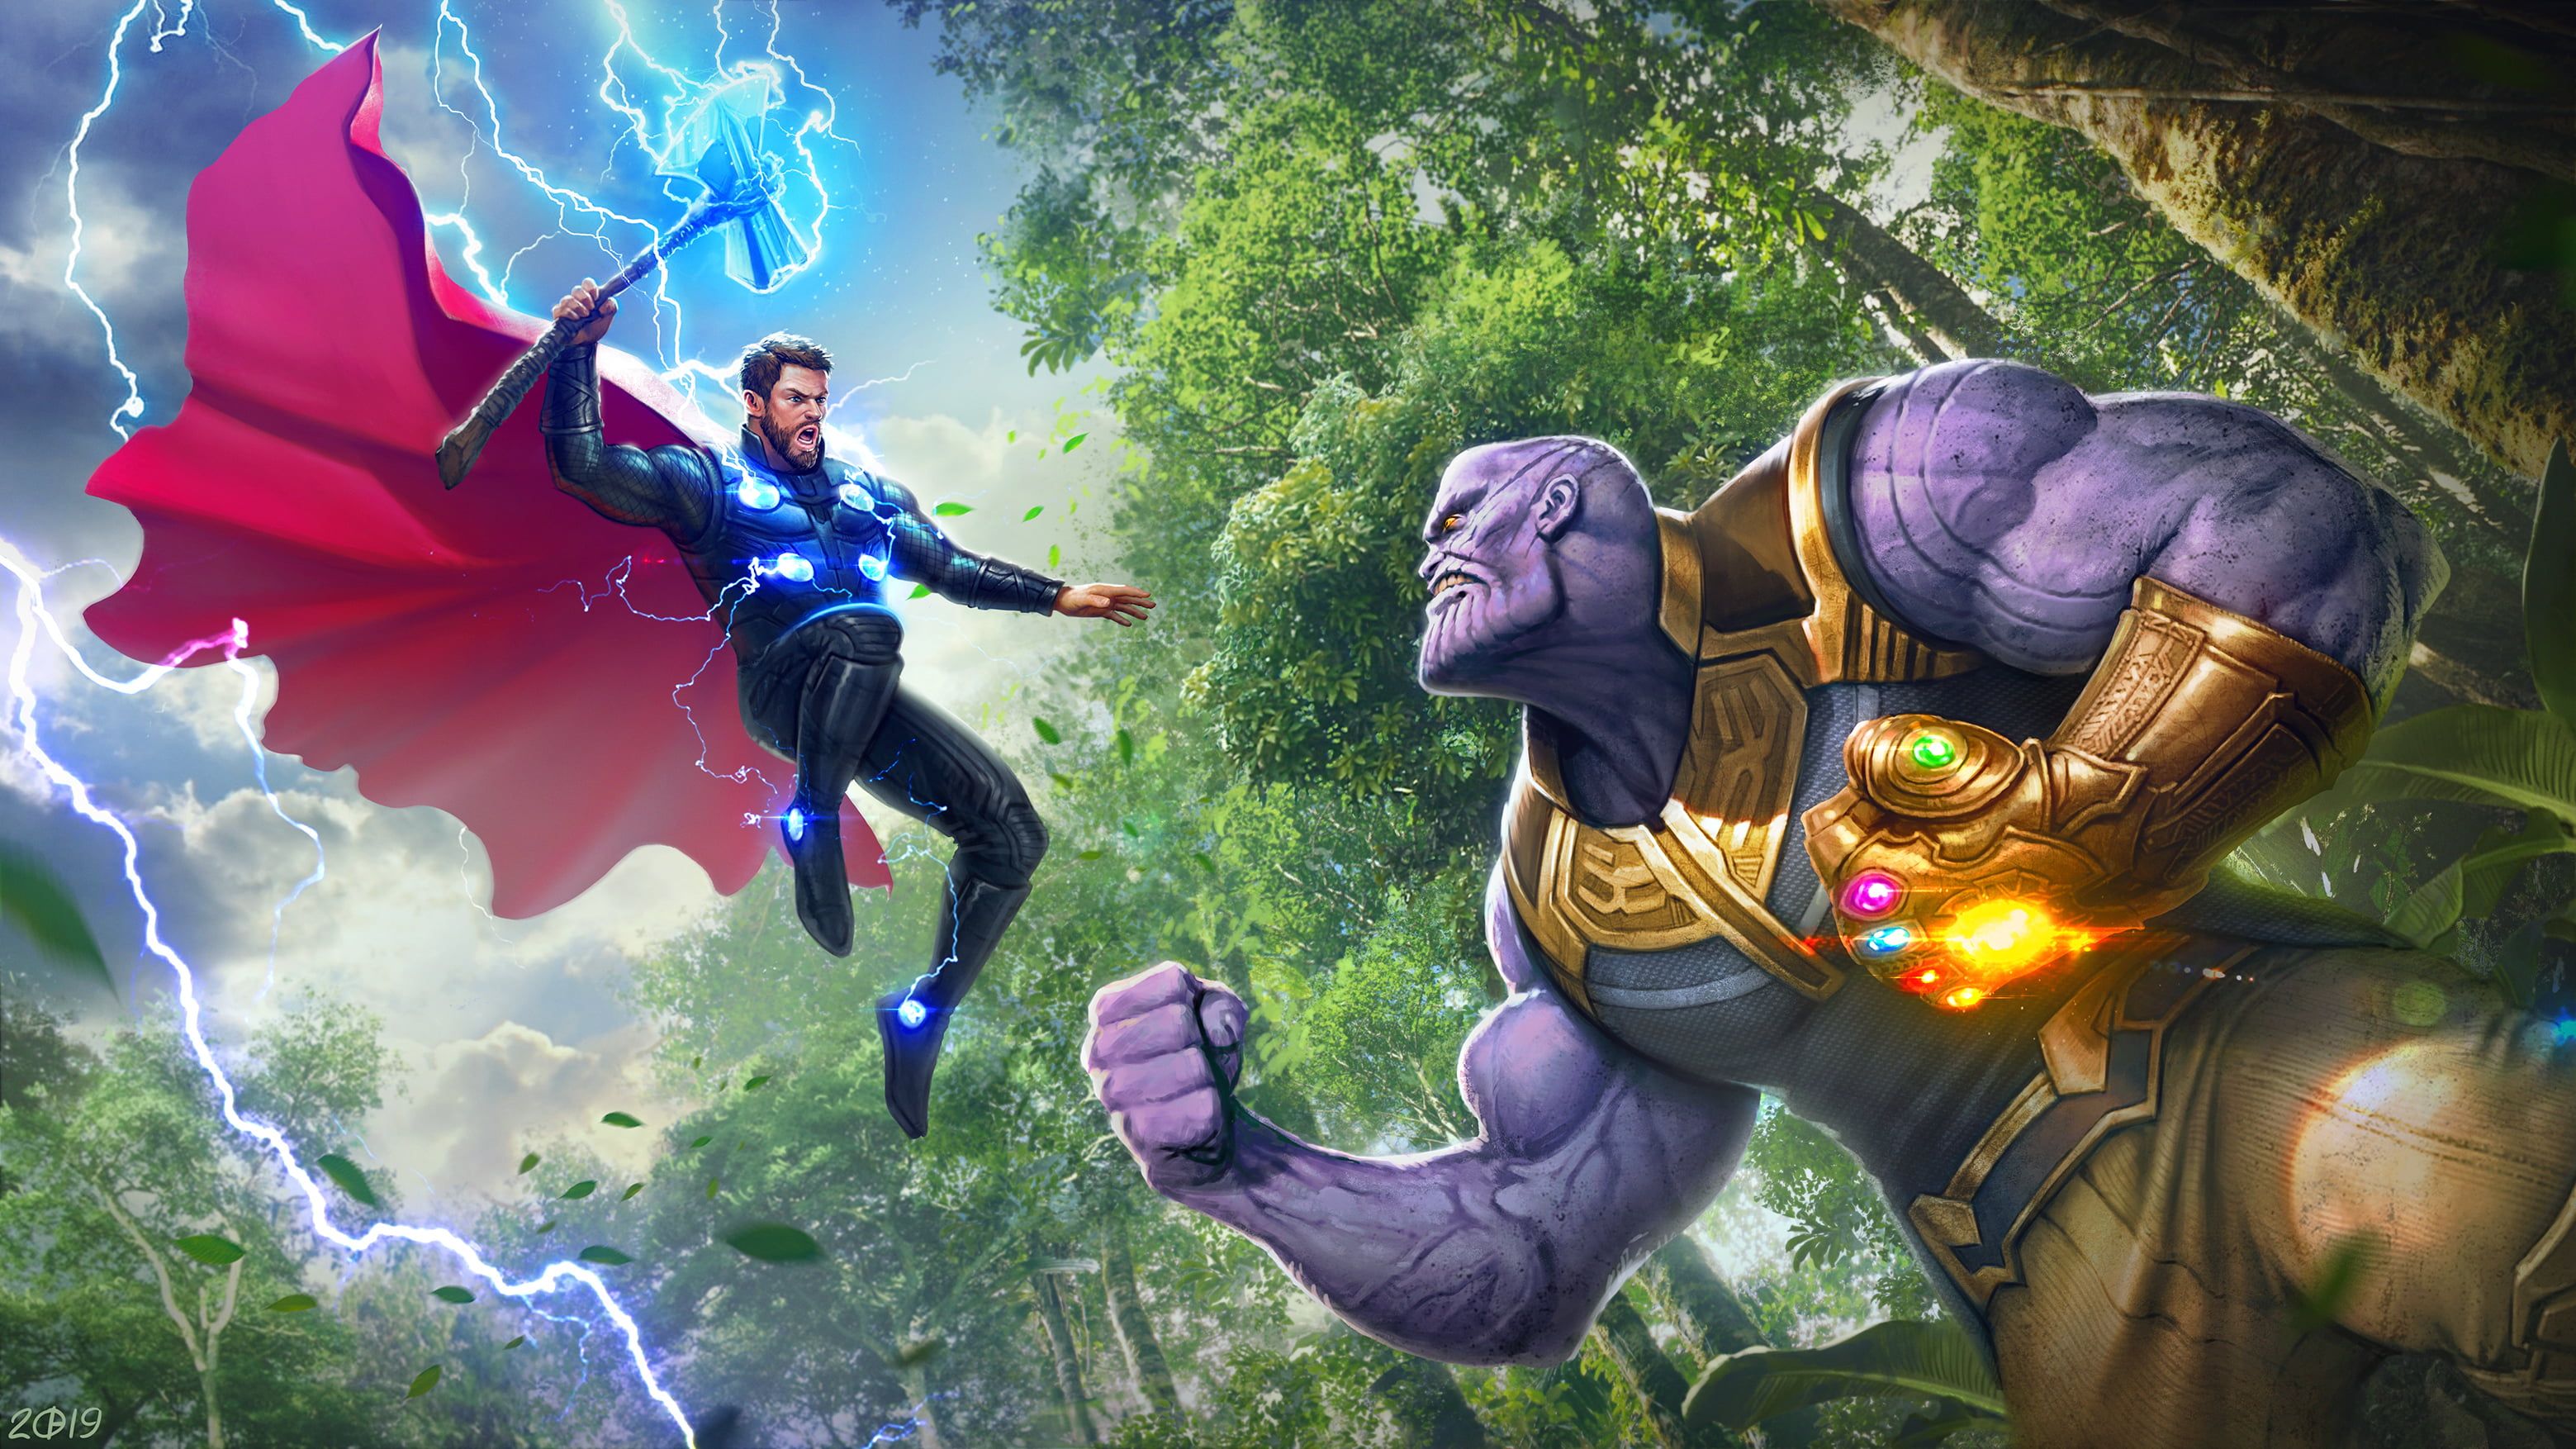 Movie Avengers: Infinity War #Avengers Infinity Gauntlet #Thanos #Thor K # wallpaper #hdwallpaper #desktop. Thor vs thanos, Marvel superheroes, Marvel art